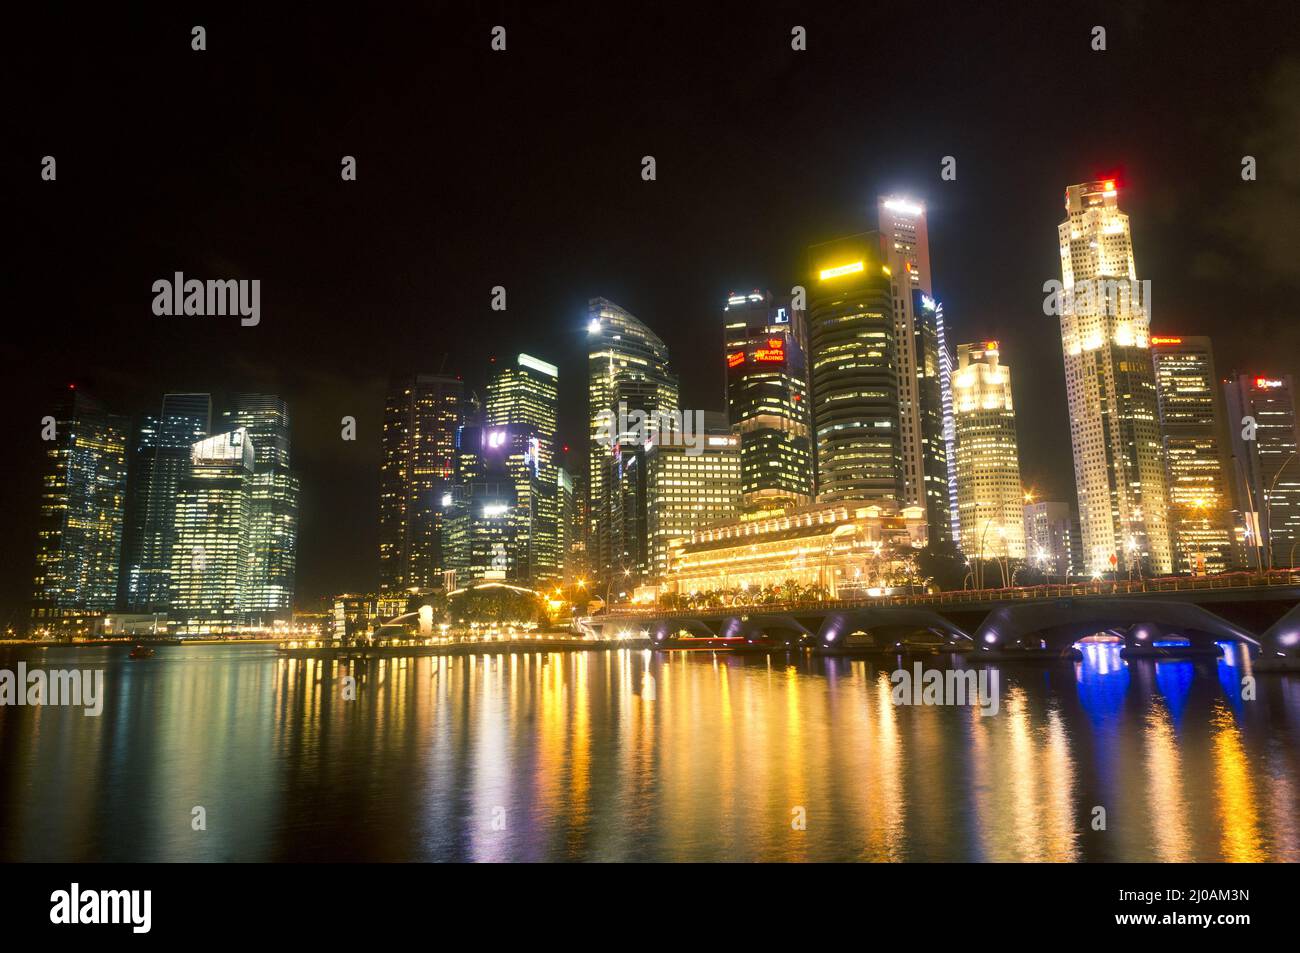 Singapore city skyline at night Stock Photo